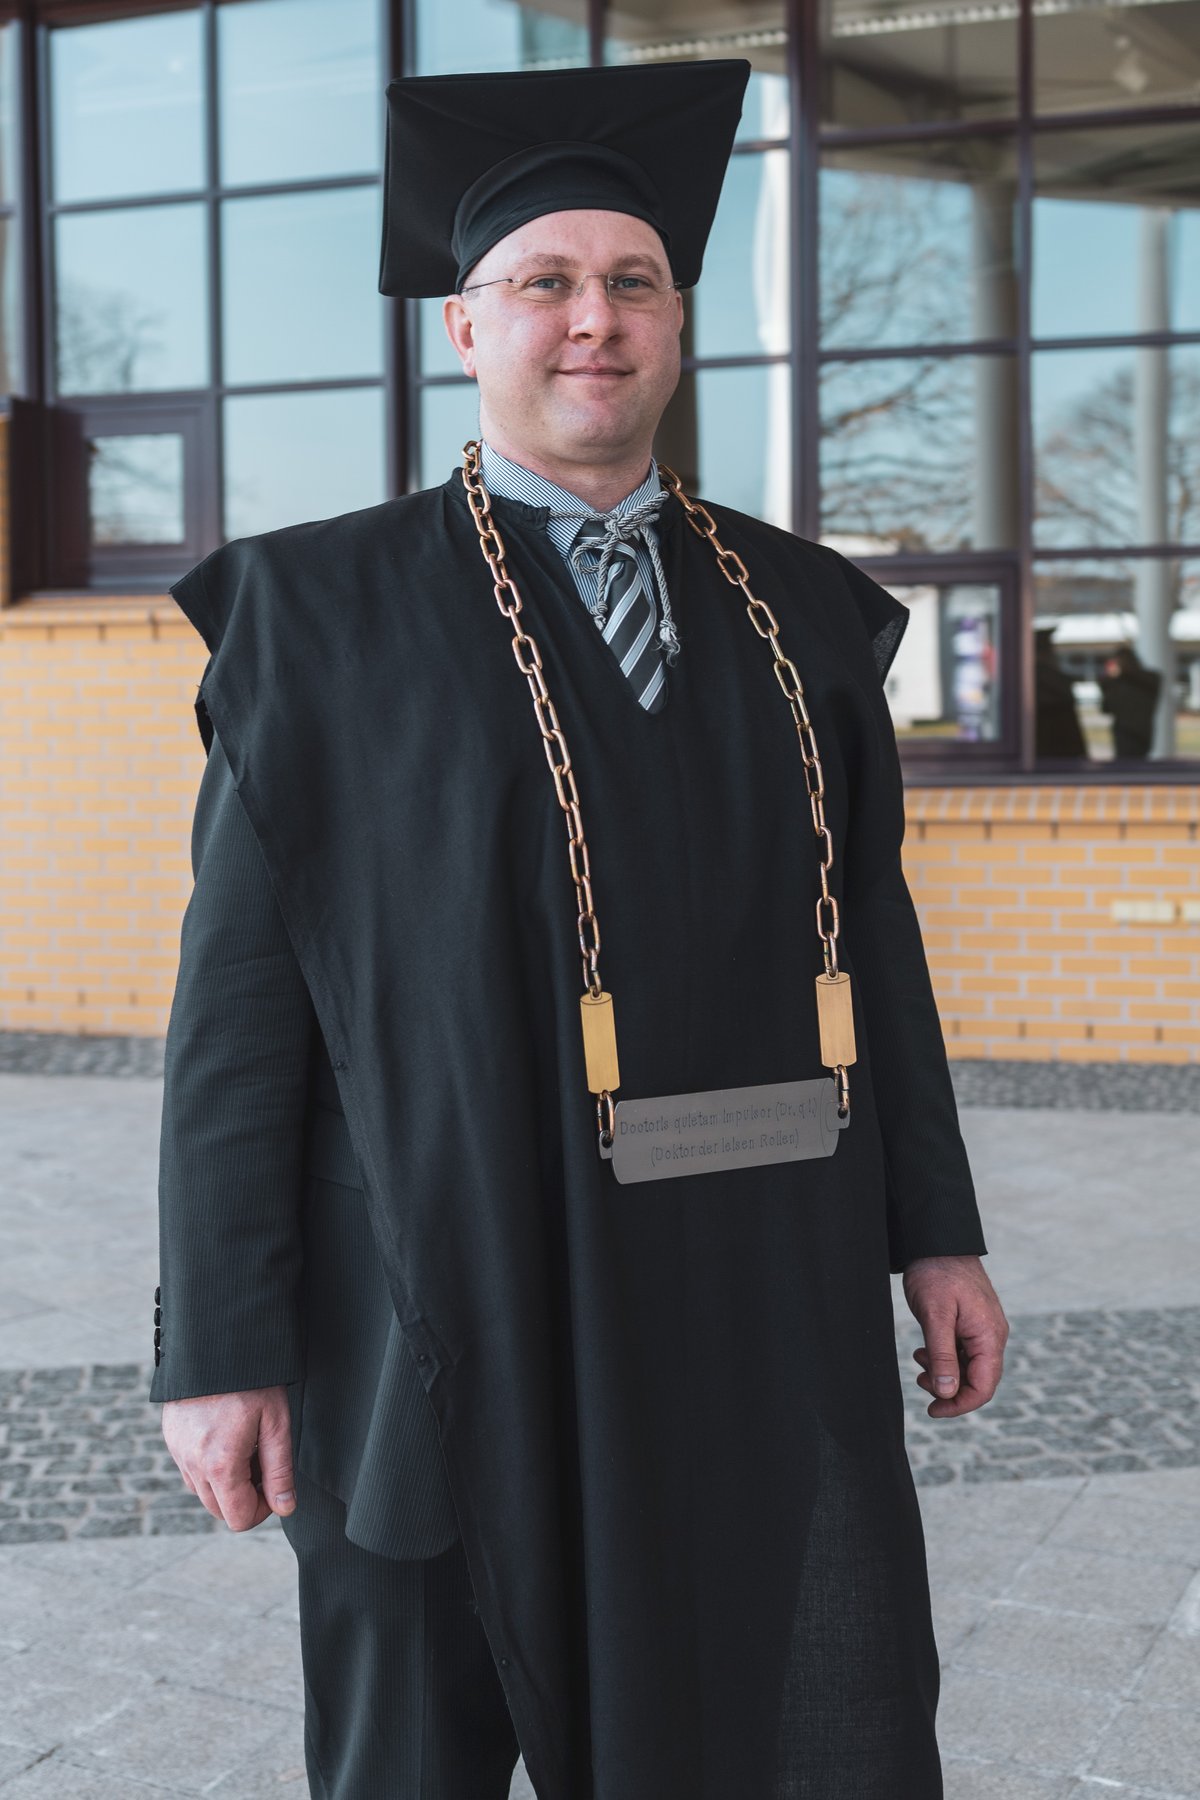 BTU Alumnus Thomas Rieder nach der erfolgreichen Disputation